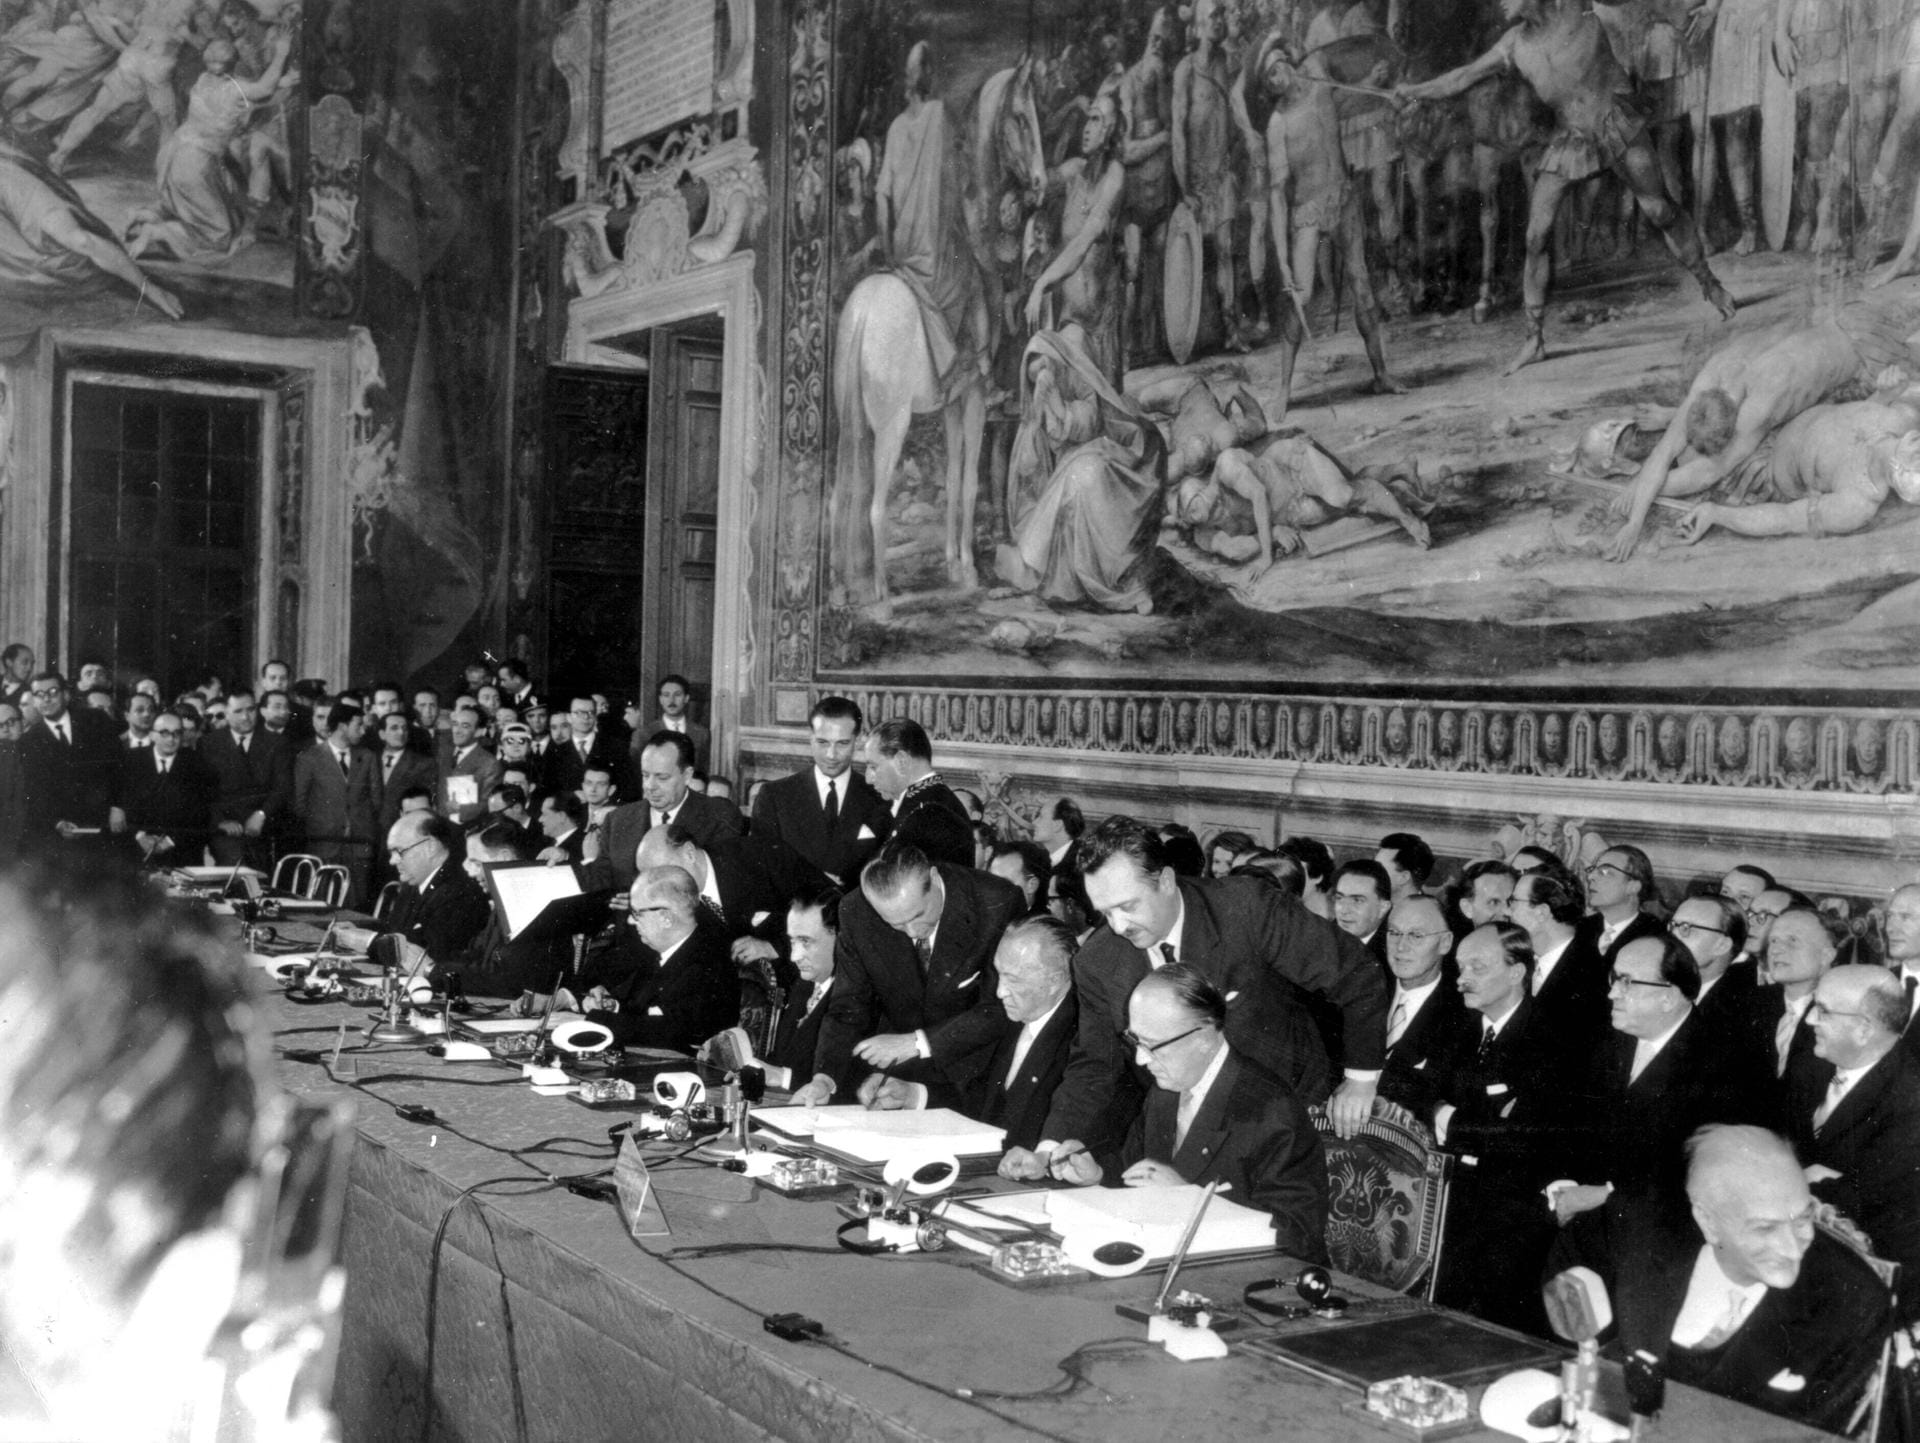 Am 25. März 1957 unterzeichnen Belgien, Deutschland, Frankreich, Italien, Luxemburg und die Niederlande in Rom die Römischen Verträge. Damit ist der Grundstein für die spätere Gründung der Europäischen Union geschaffen. Mit Deutschland und Frankreich sitzen ehemalige Feinde nun als Partner an einem Tisch. Bundeskanzler Konrad Adenauer ist für Deutschland vor Ort.